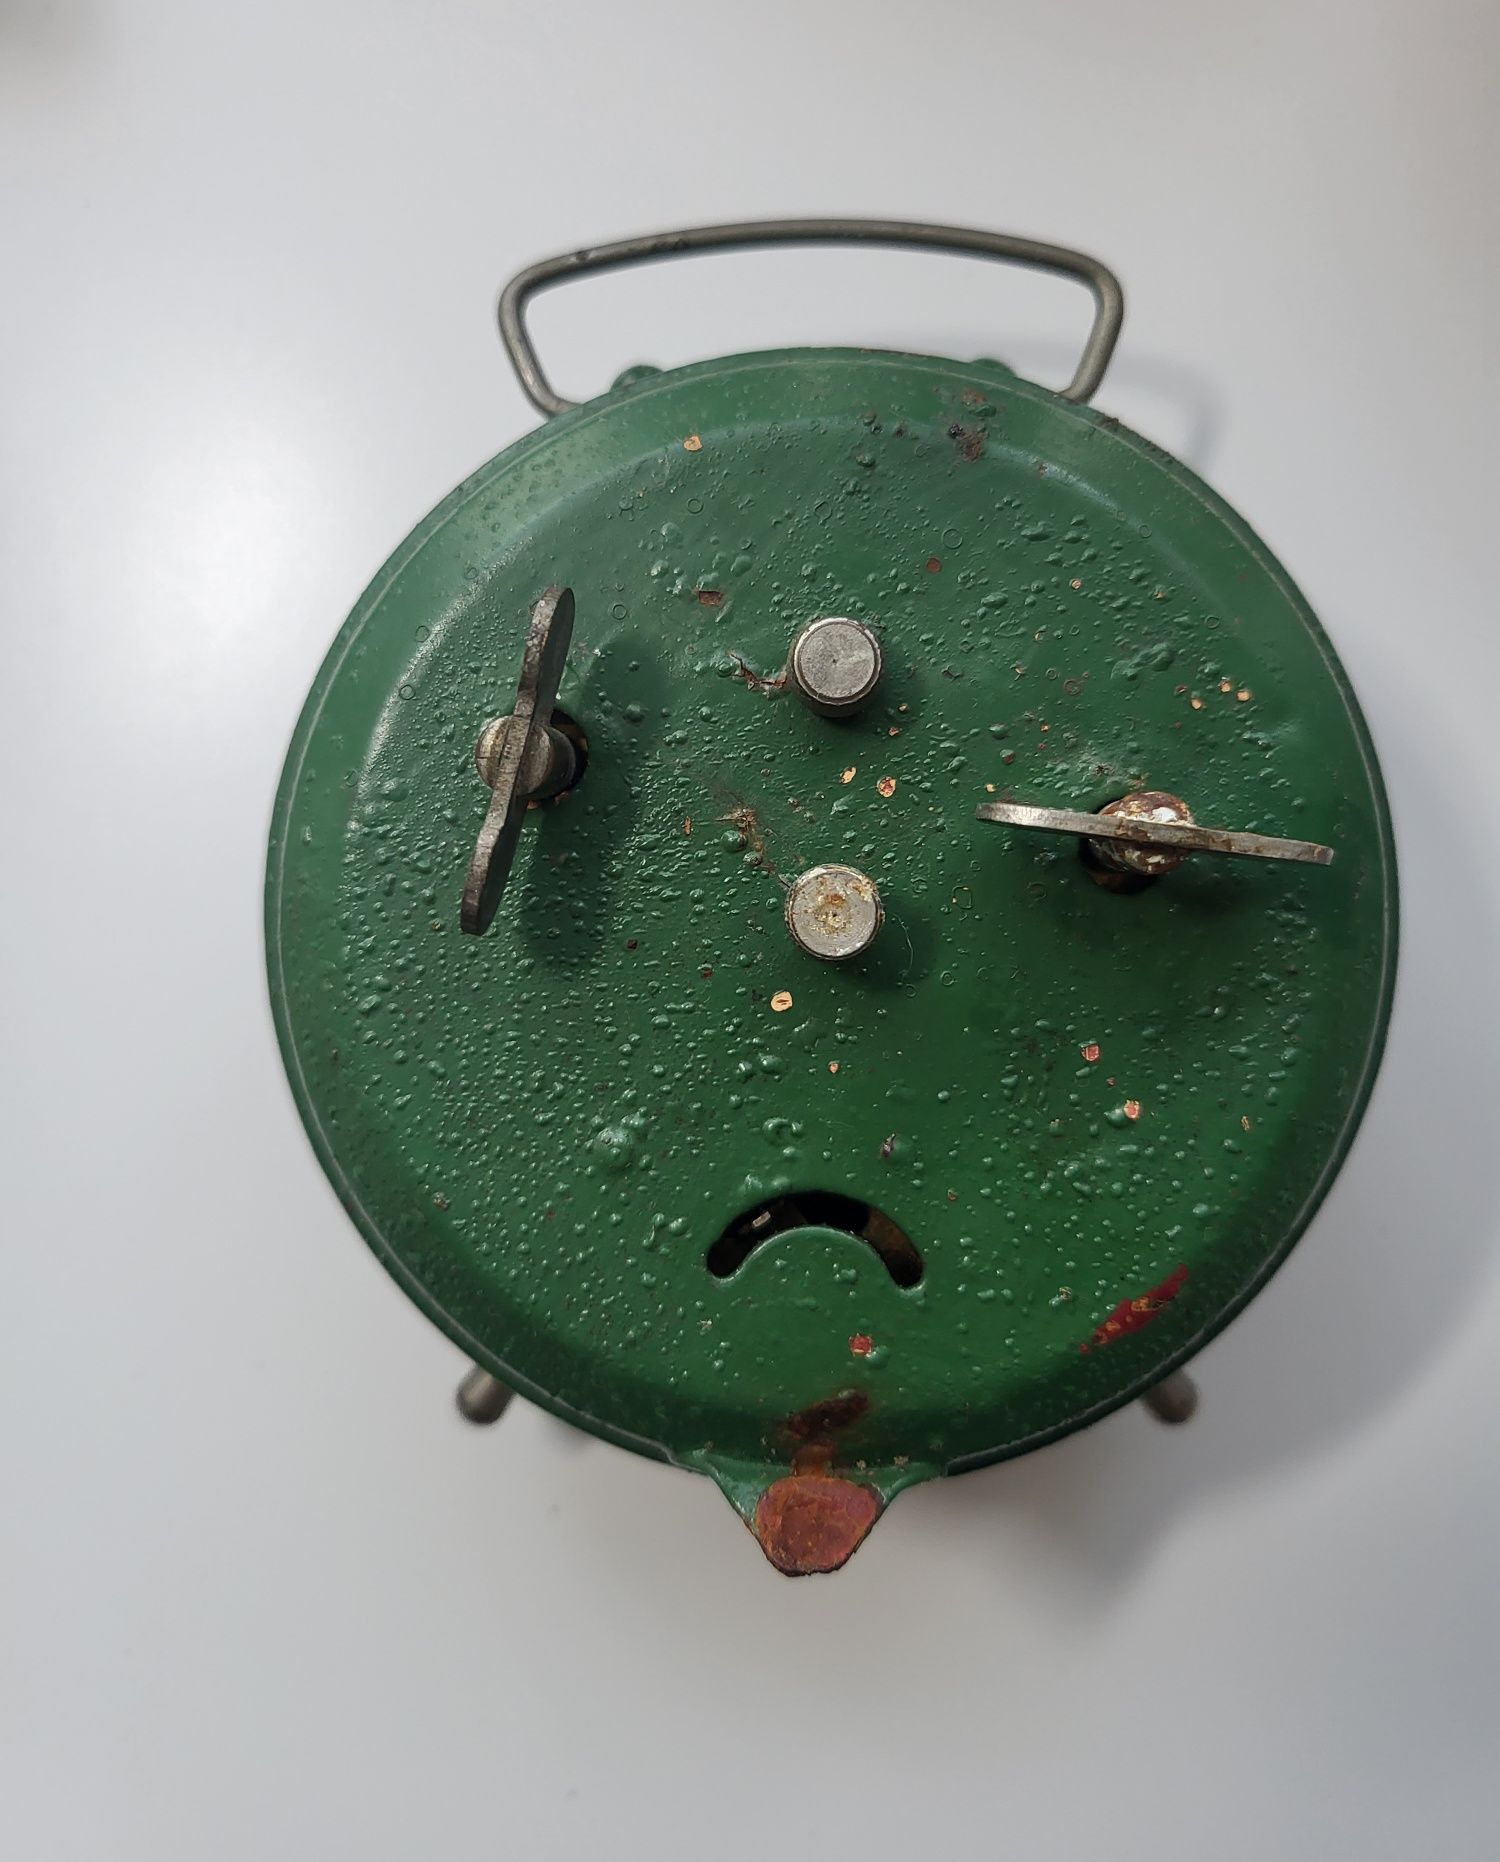 Relógio despertador vintage da Reguladora